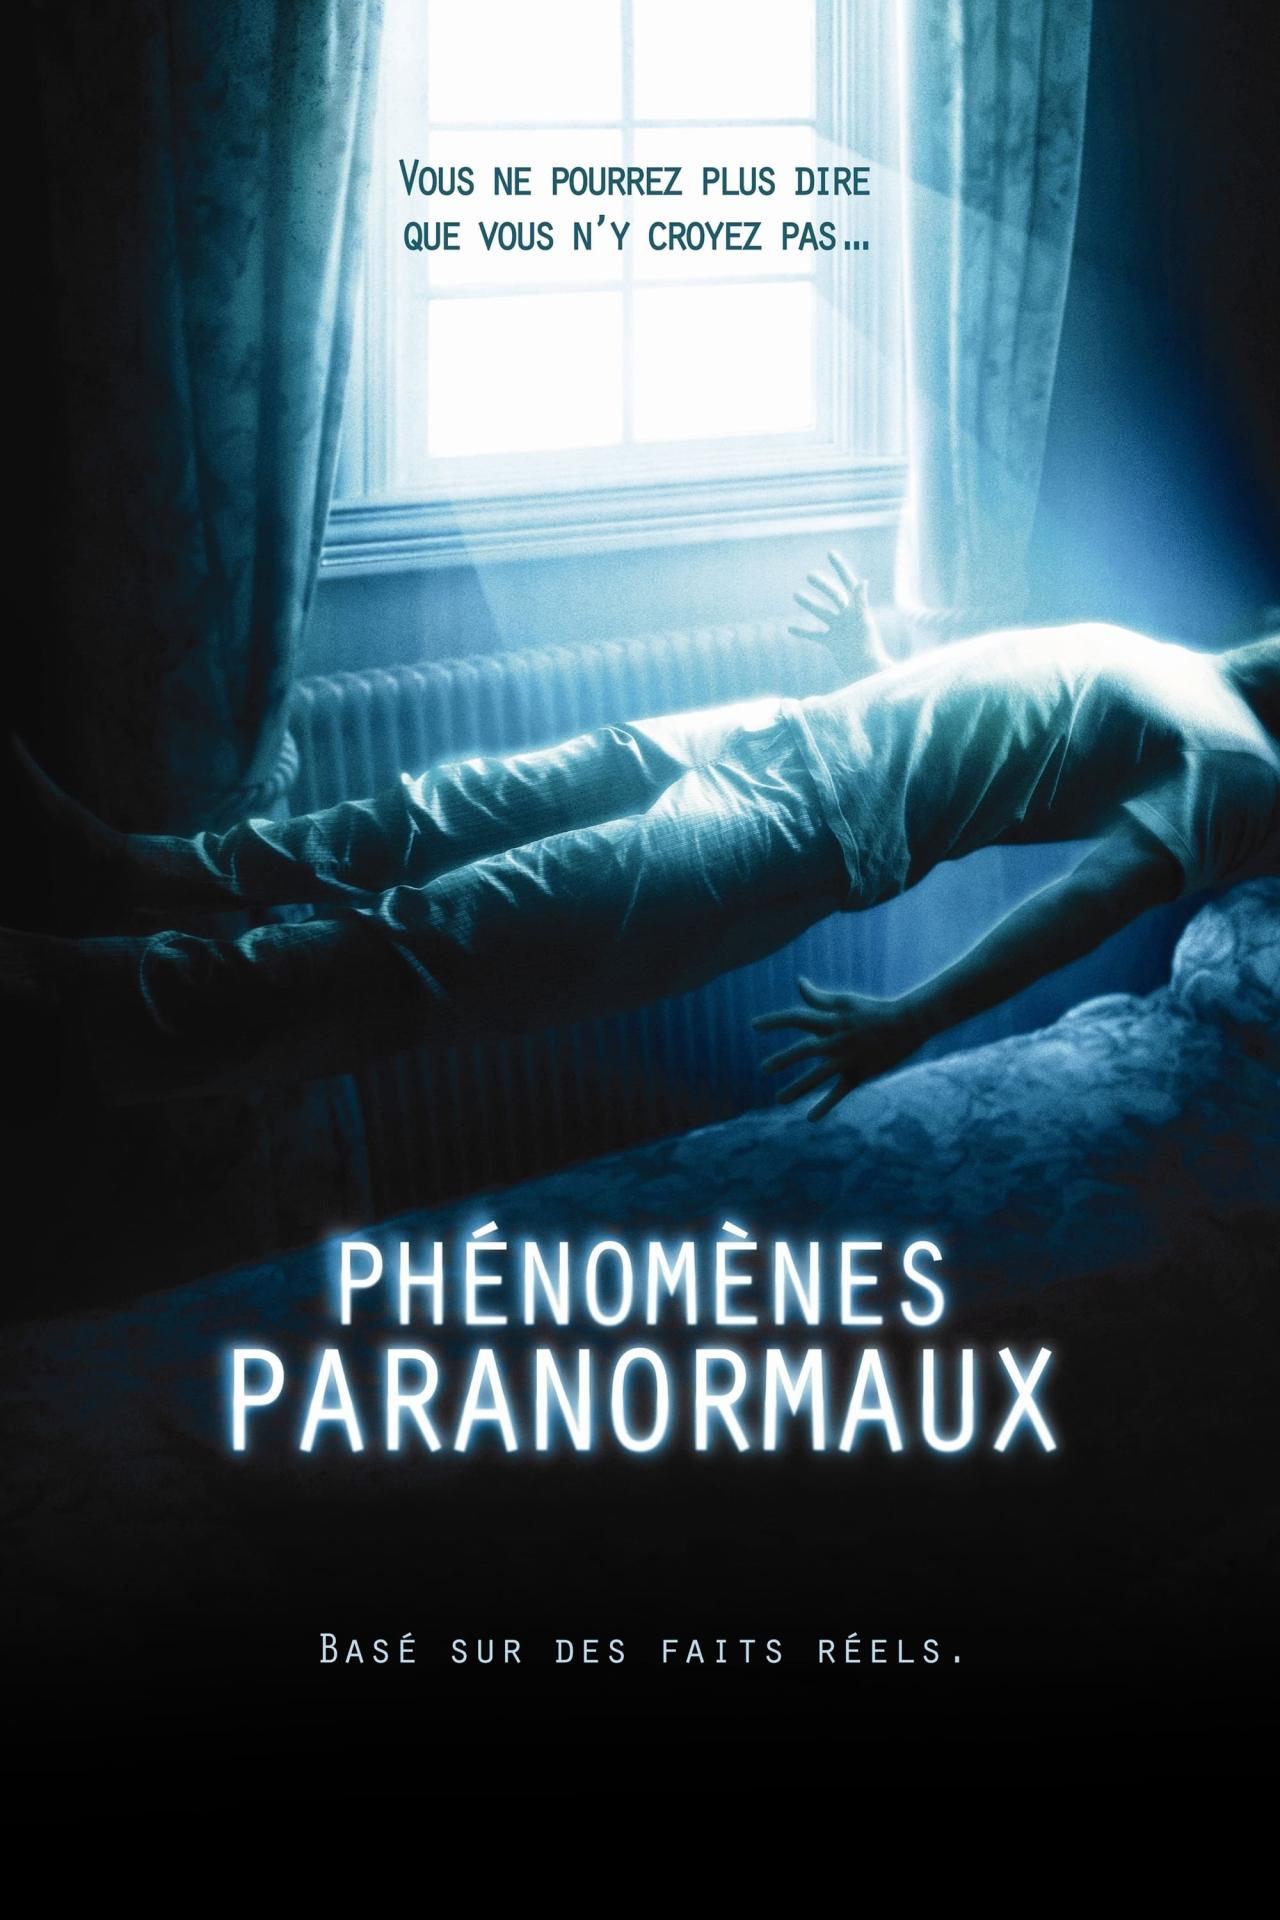 Phénomènes paranormaux est-il disponible sur Netflix ou autre ?